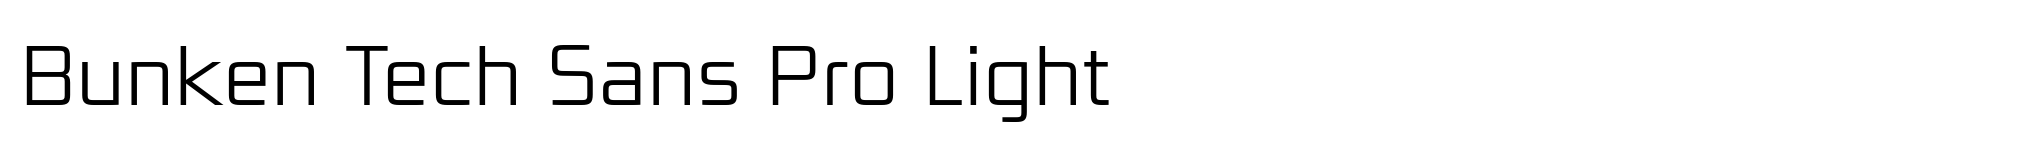 Bunken Tech Sans Pro Light image